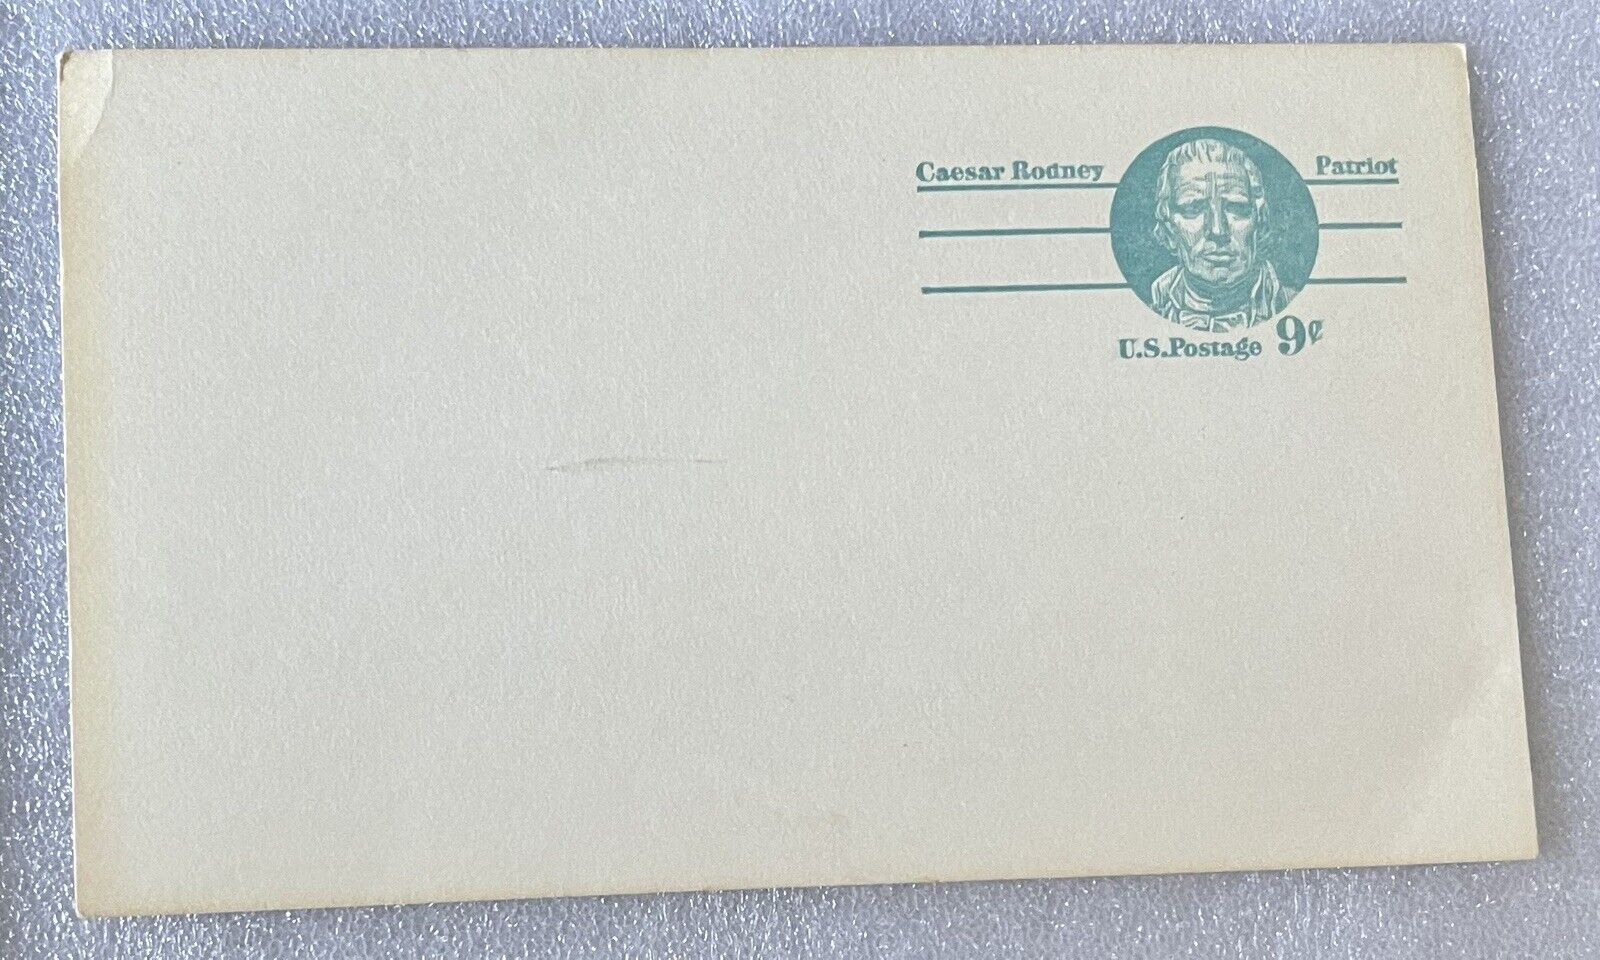 Blank U.S. Postal Card, Cesar Rodney, 9 cents, vintage postcard issued 1976